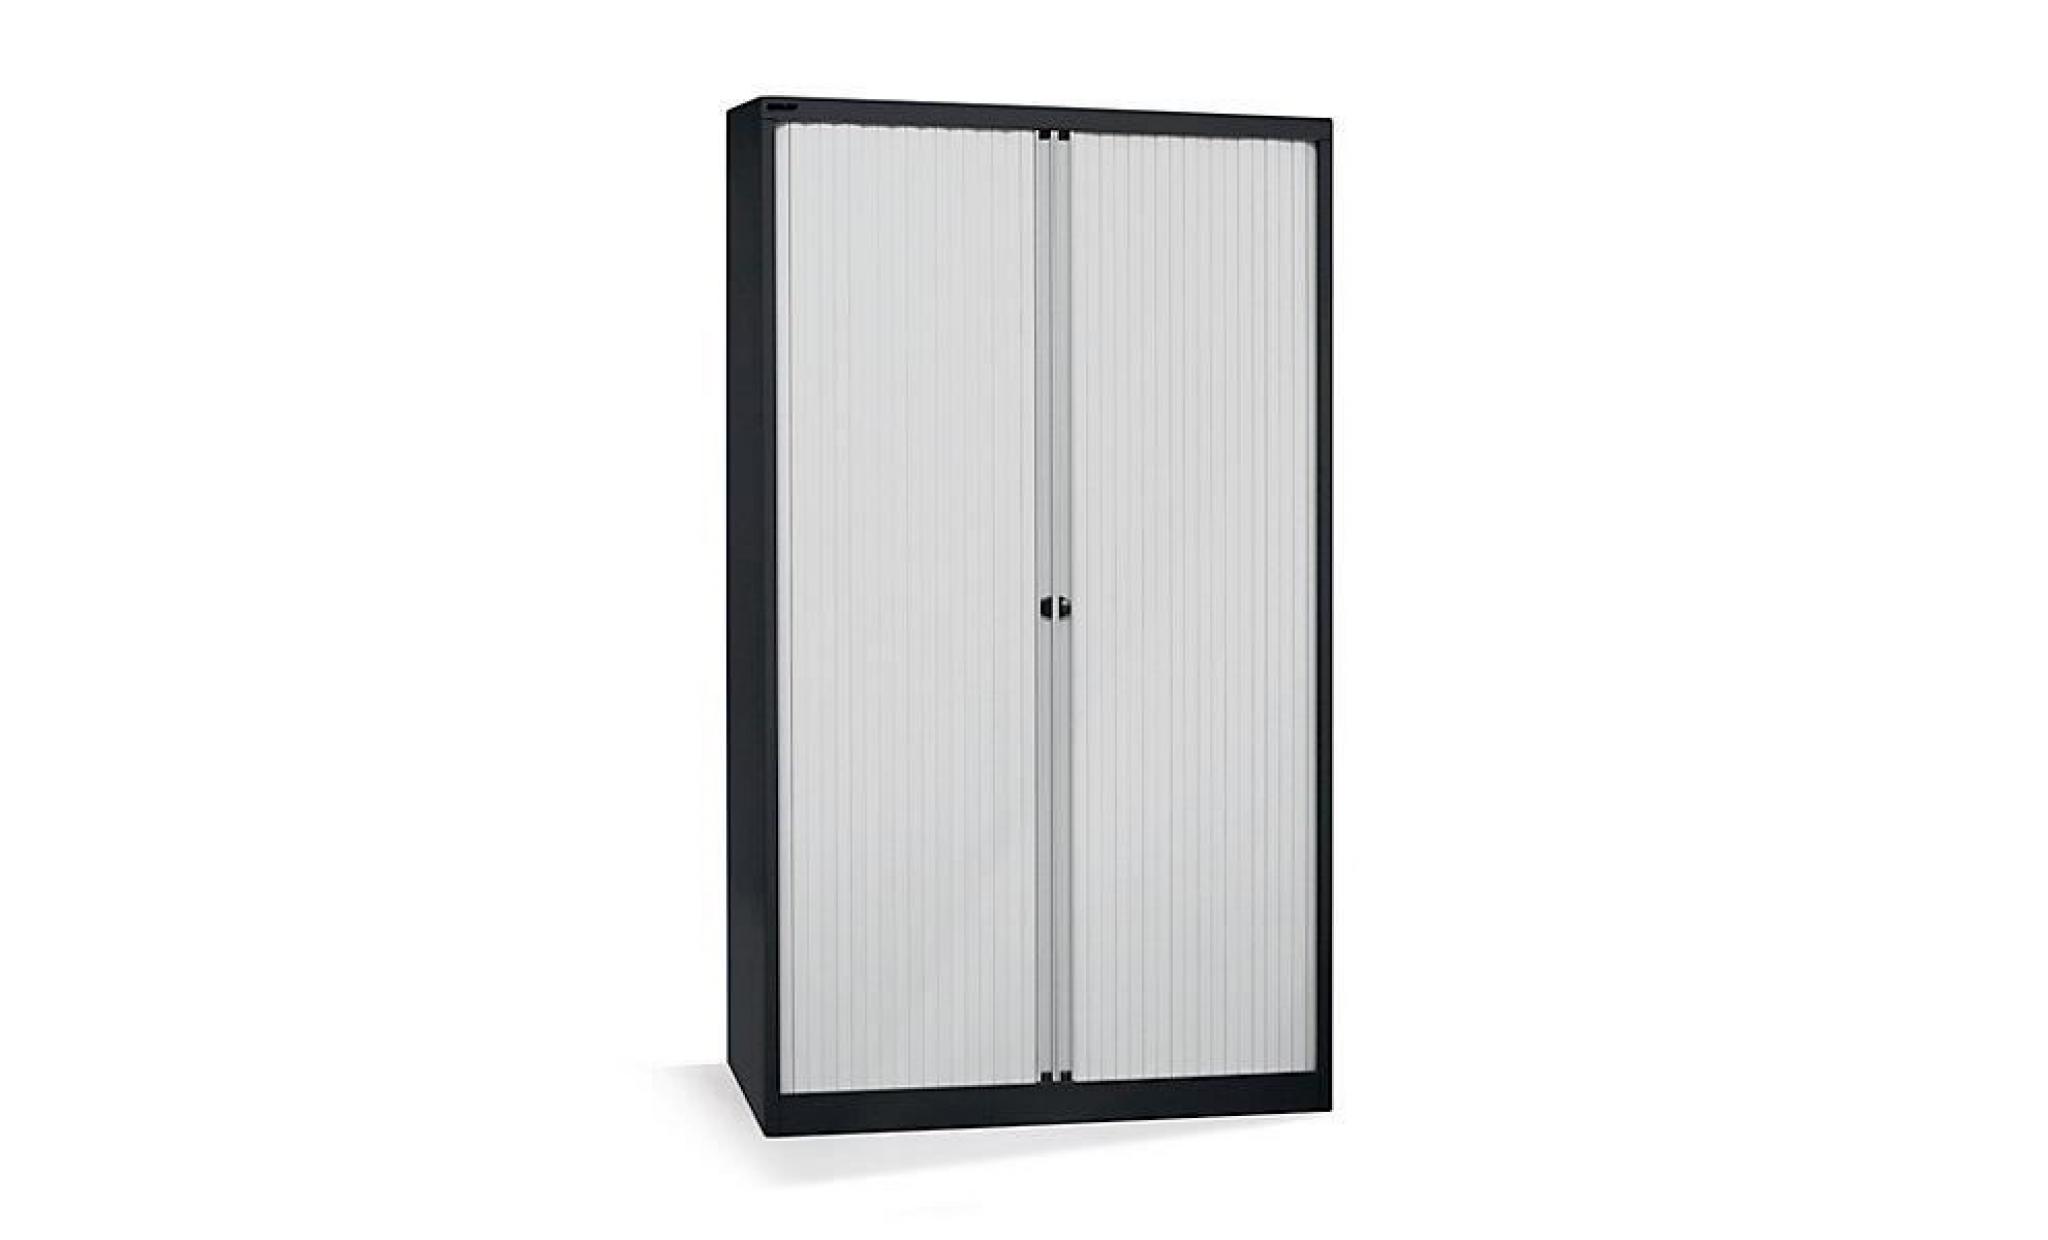 bisley armoire à rideaux   horizontal, noir profond / gris clair h x l 1980 x 1200 mm, 4 tablettes   armoire basse armoire de bureau